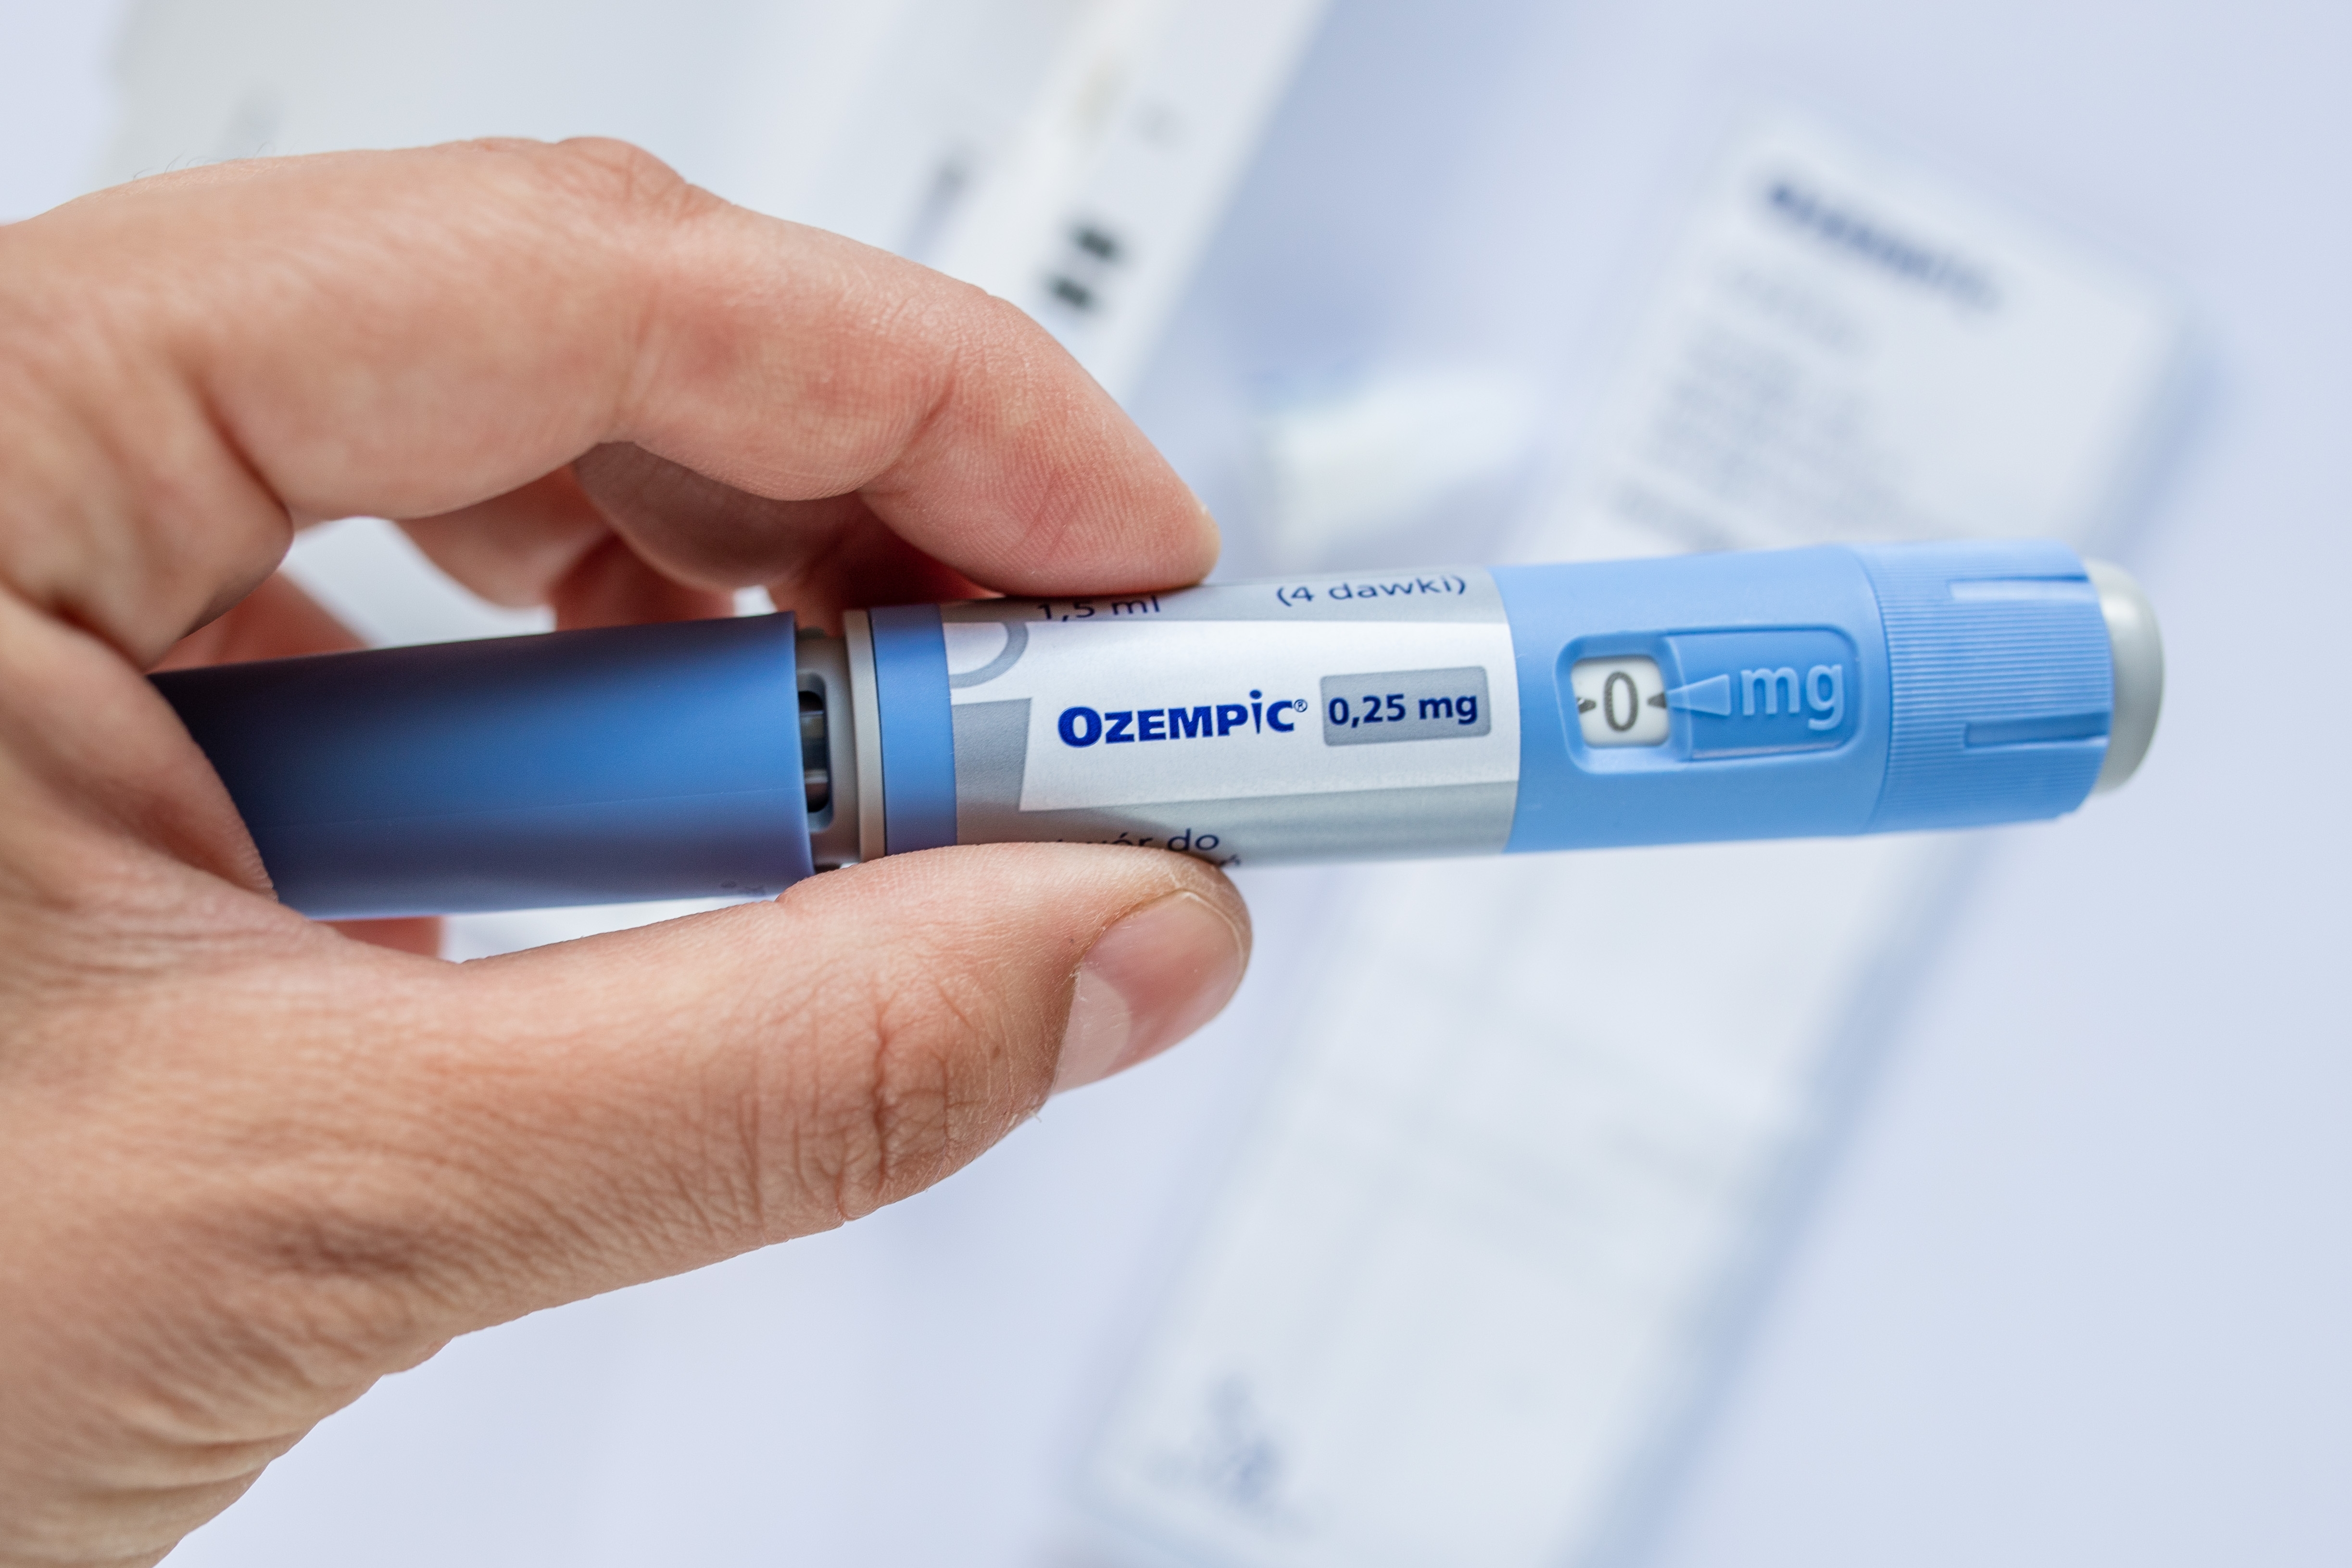 Ozempic (semaglutida), la medicina para la diabetes que funciona para bajar  de peso: cuánto cuesta y cuáles son sus riesgos